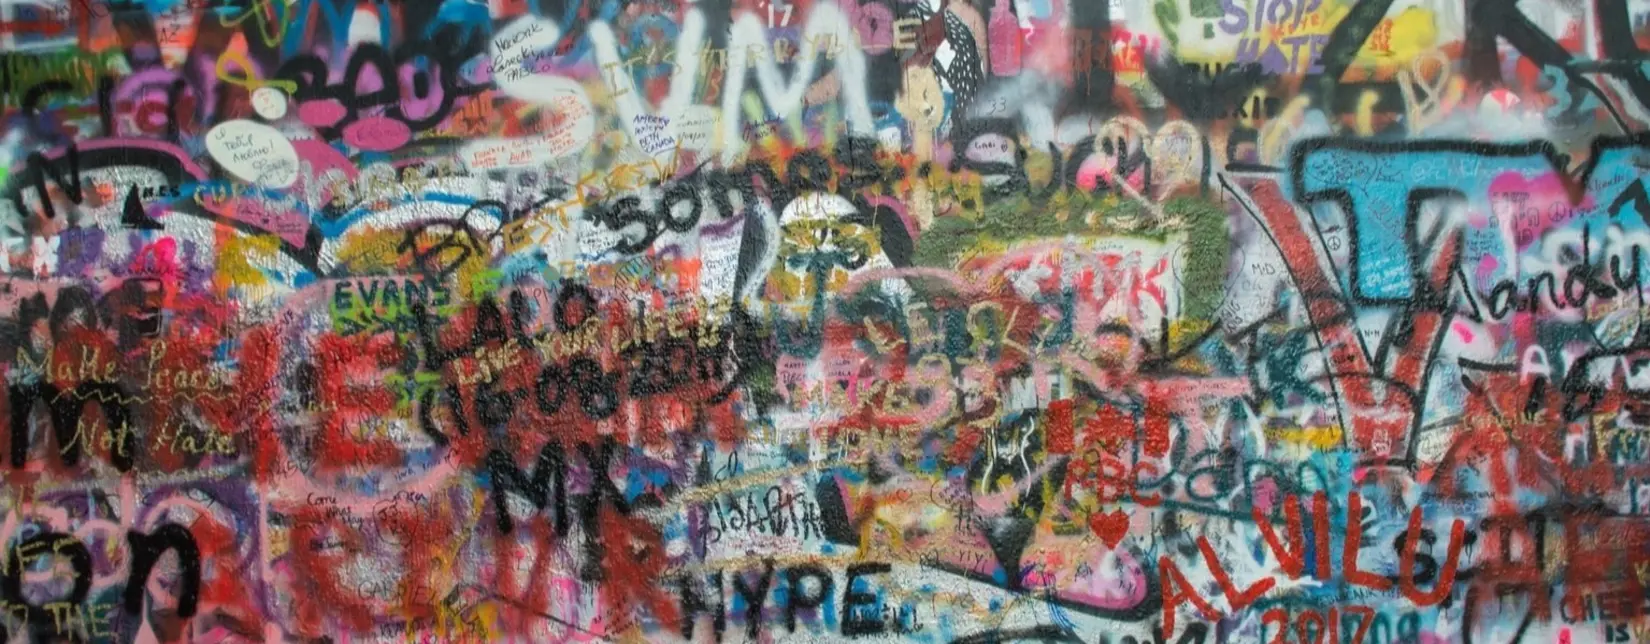 Ausschnitt einer Graffitimauer